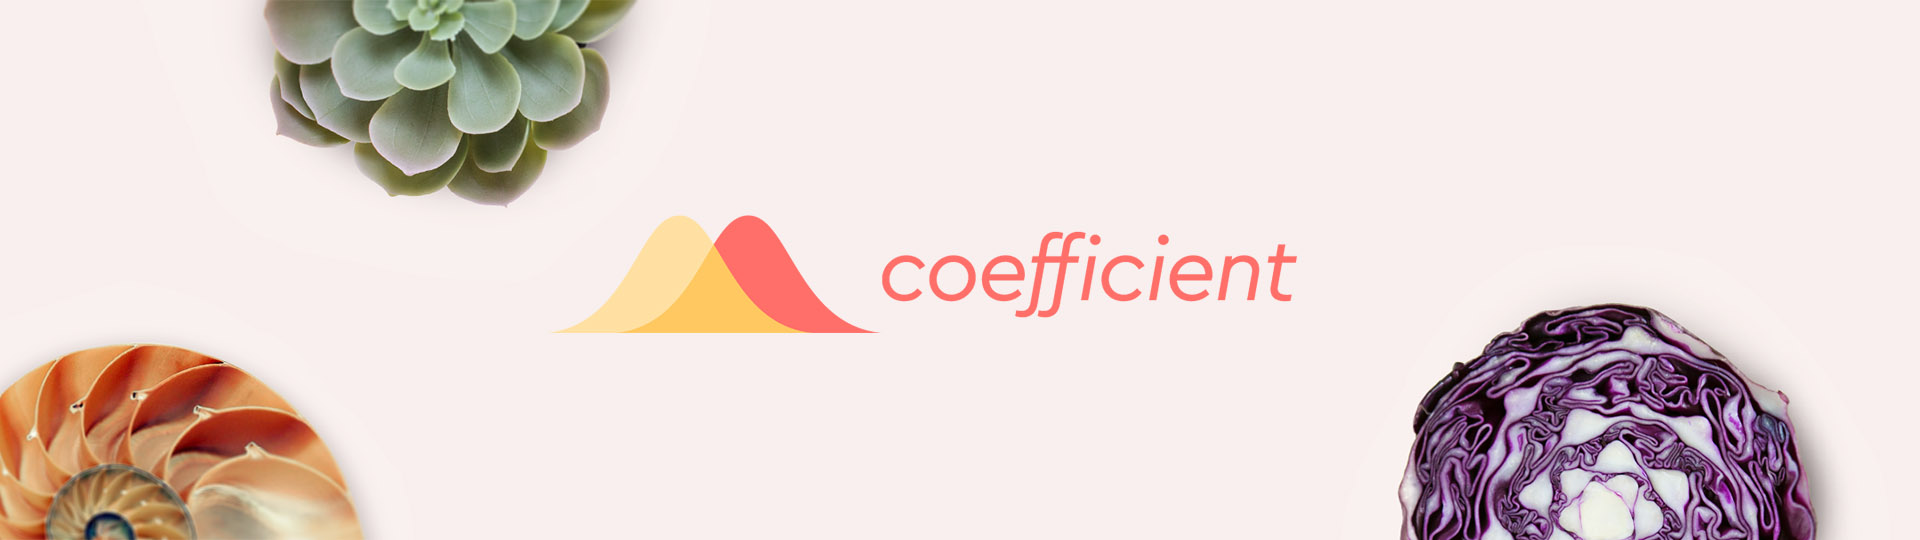 coefficient banner